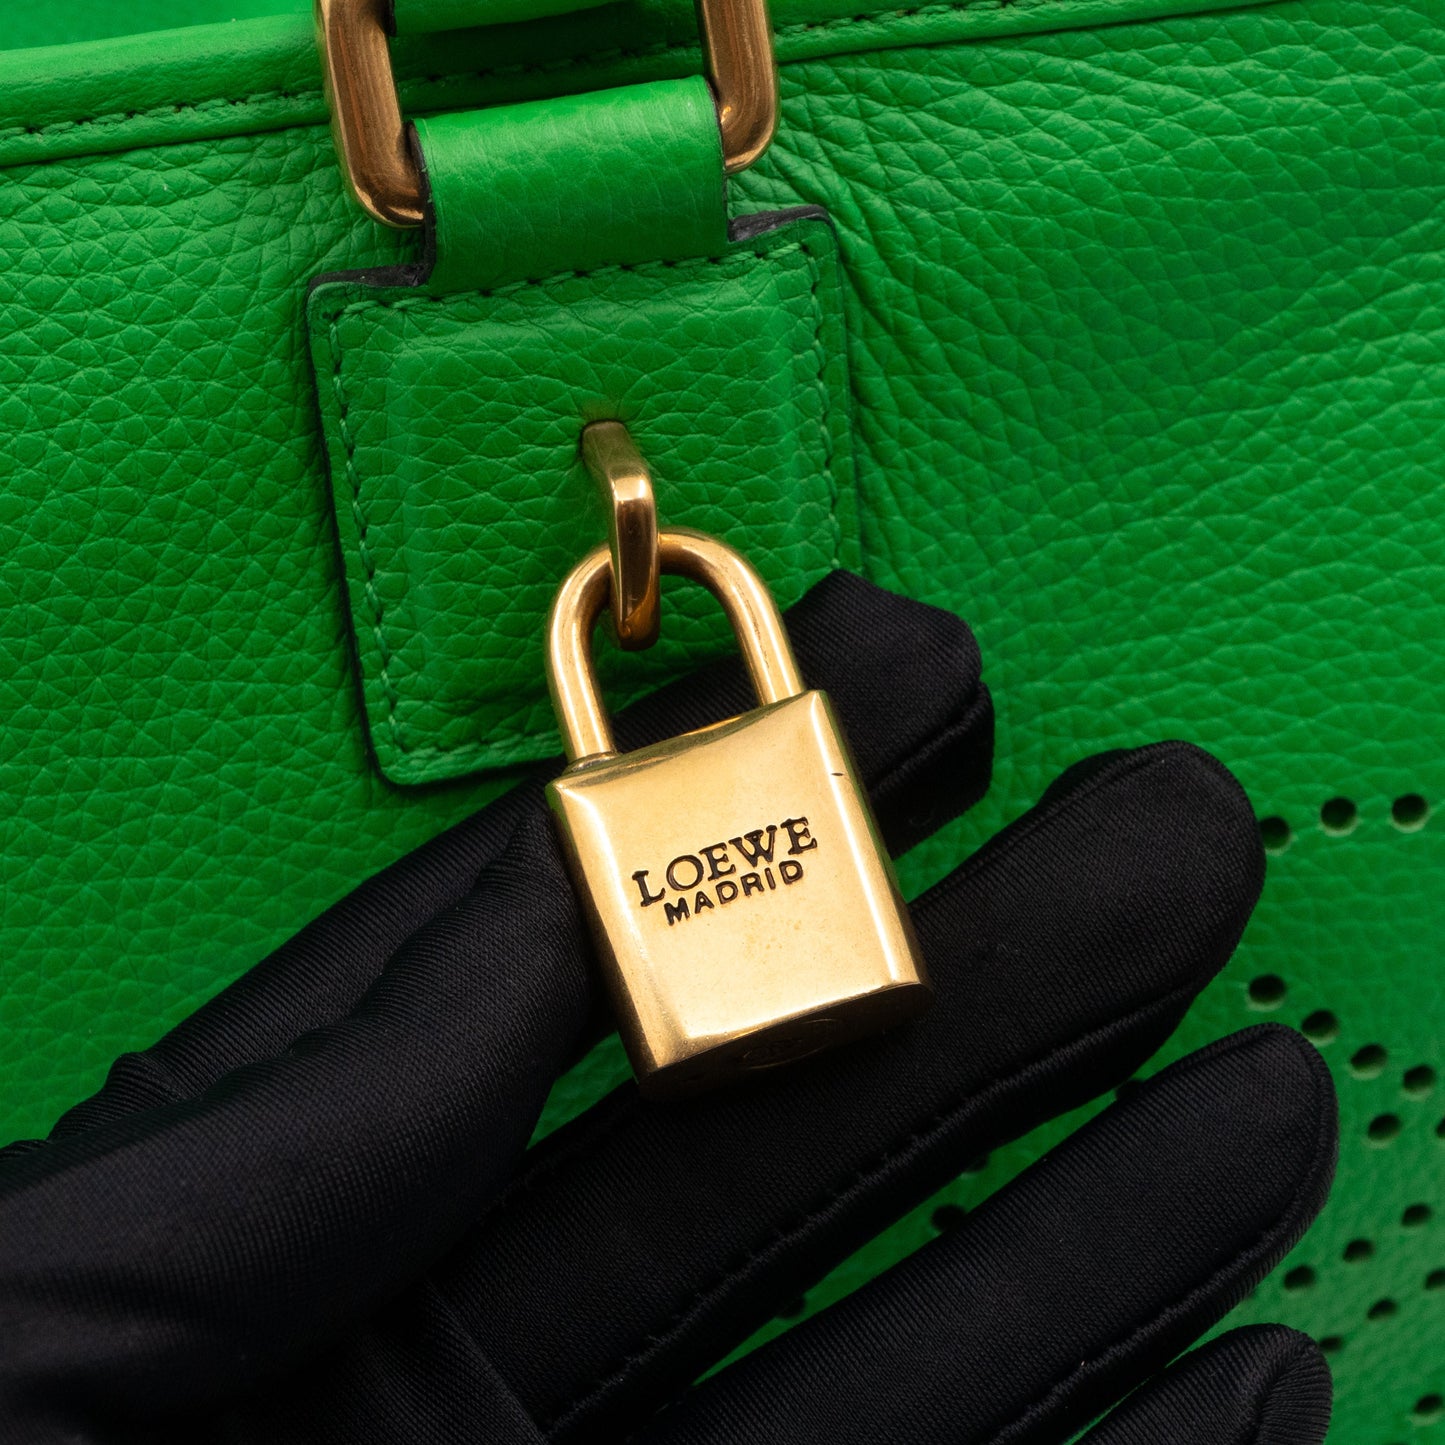 Acid Amazona 36 Handbag Green Leather